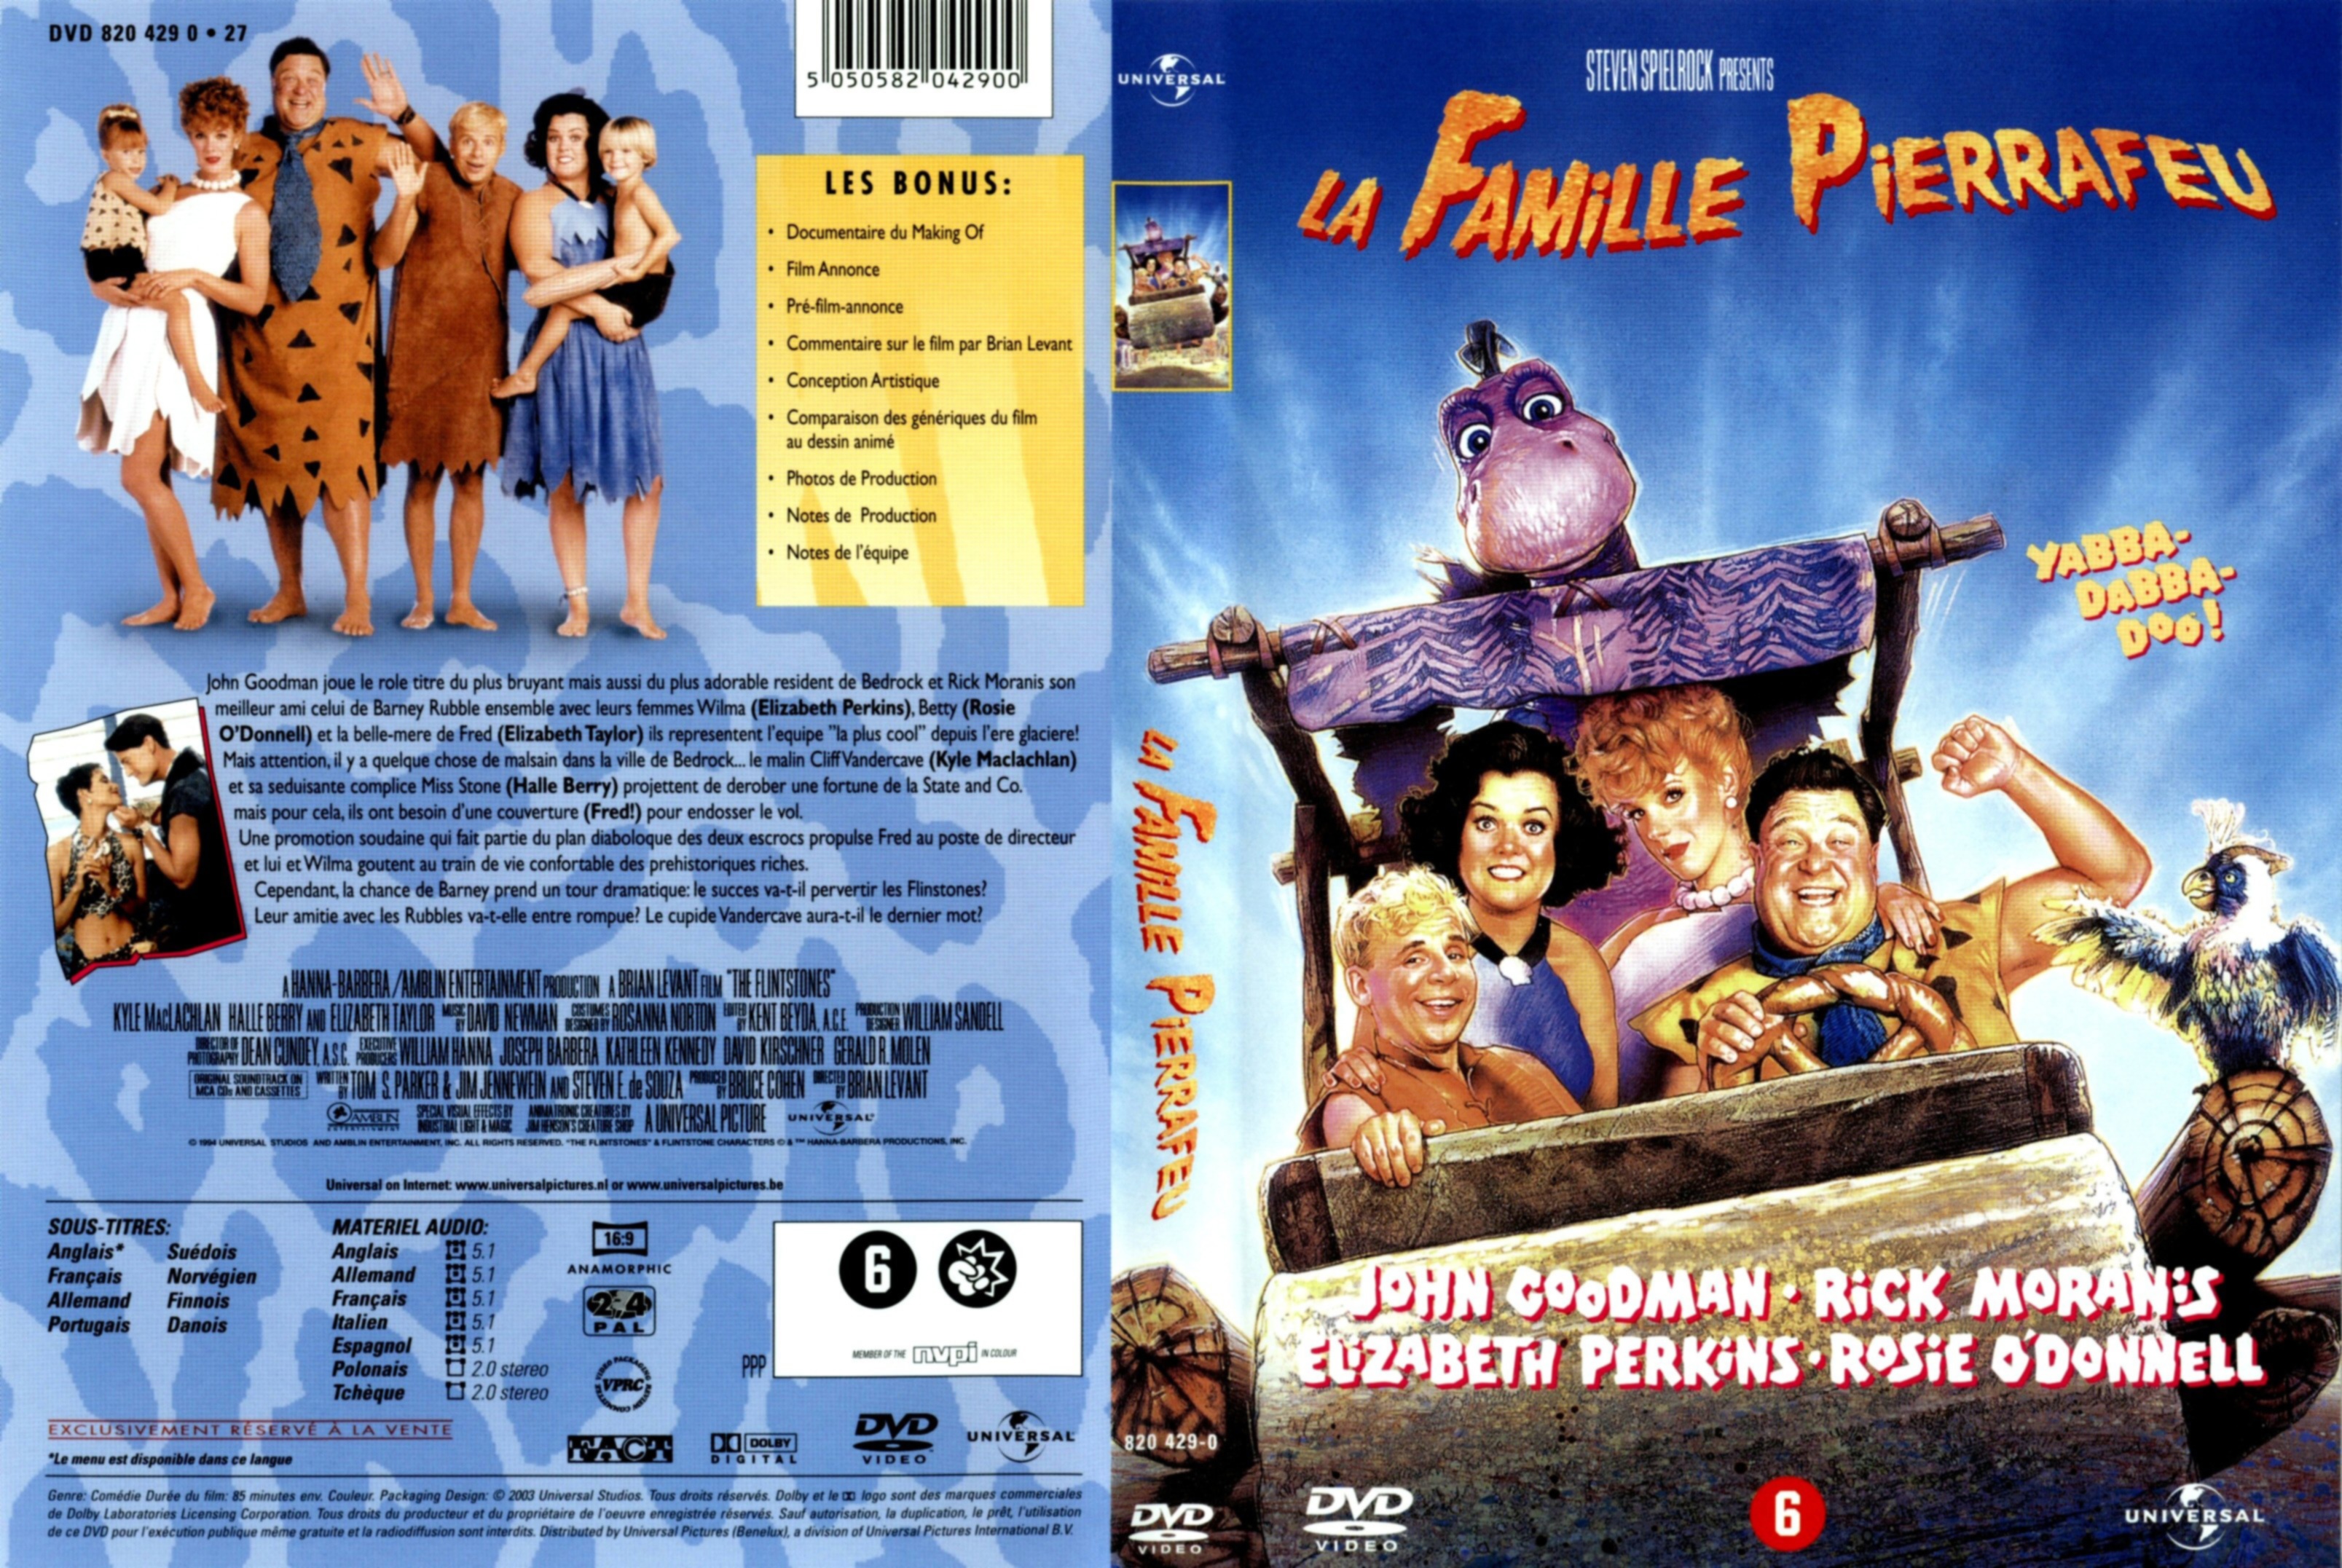 Jaquette DVD La famille Pierrafeu